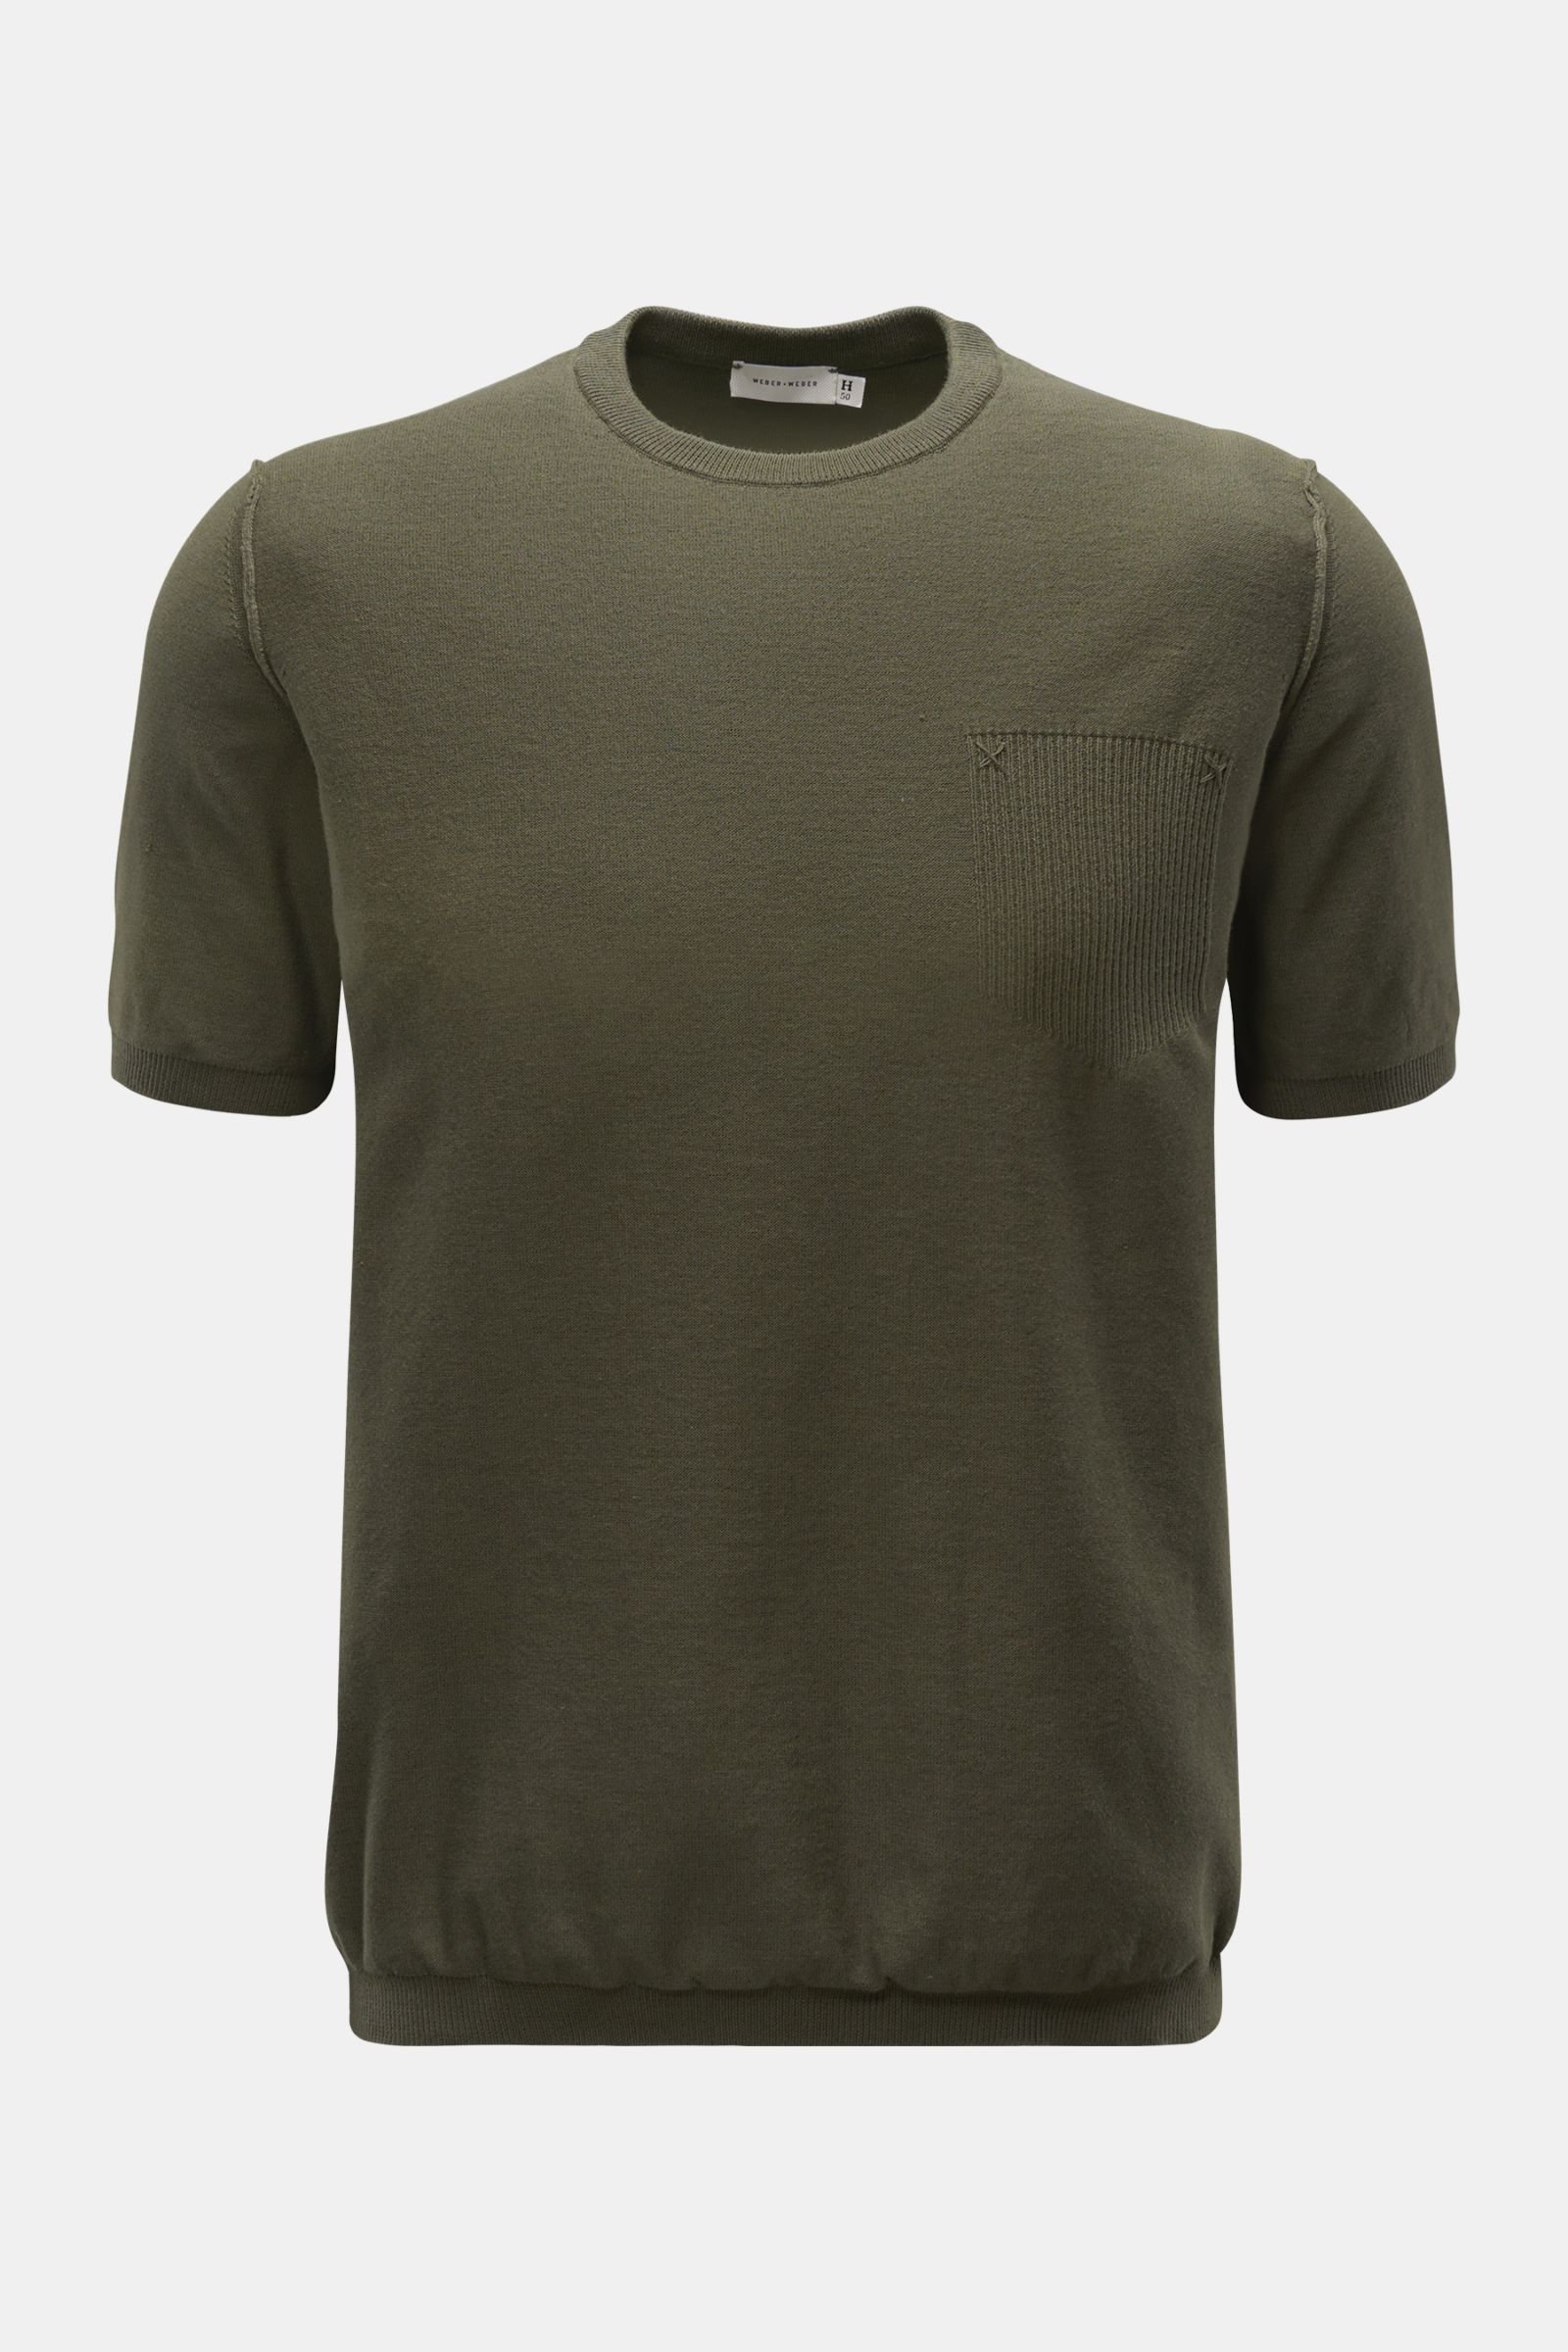 WEBER + WEBER short sleeve crew neck jumper 'Cotton Knit T-Shirt